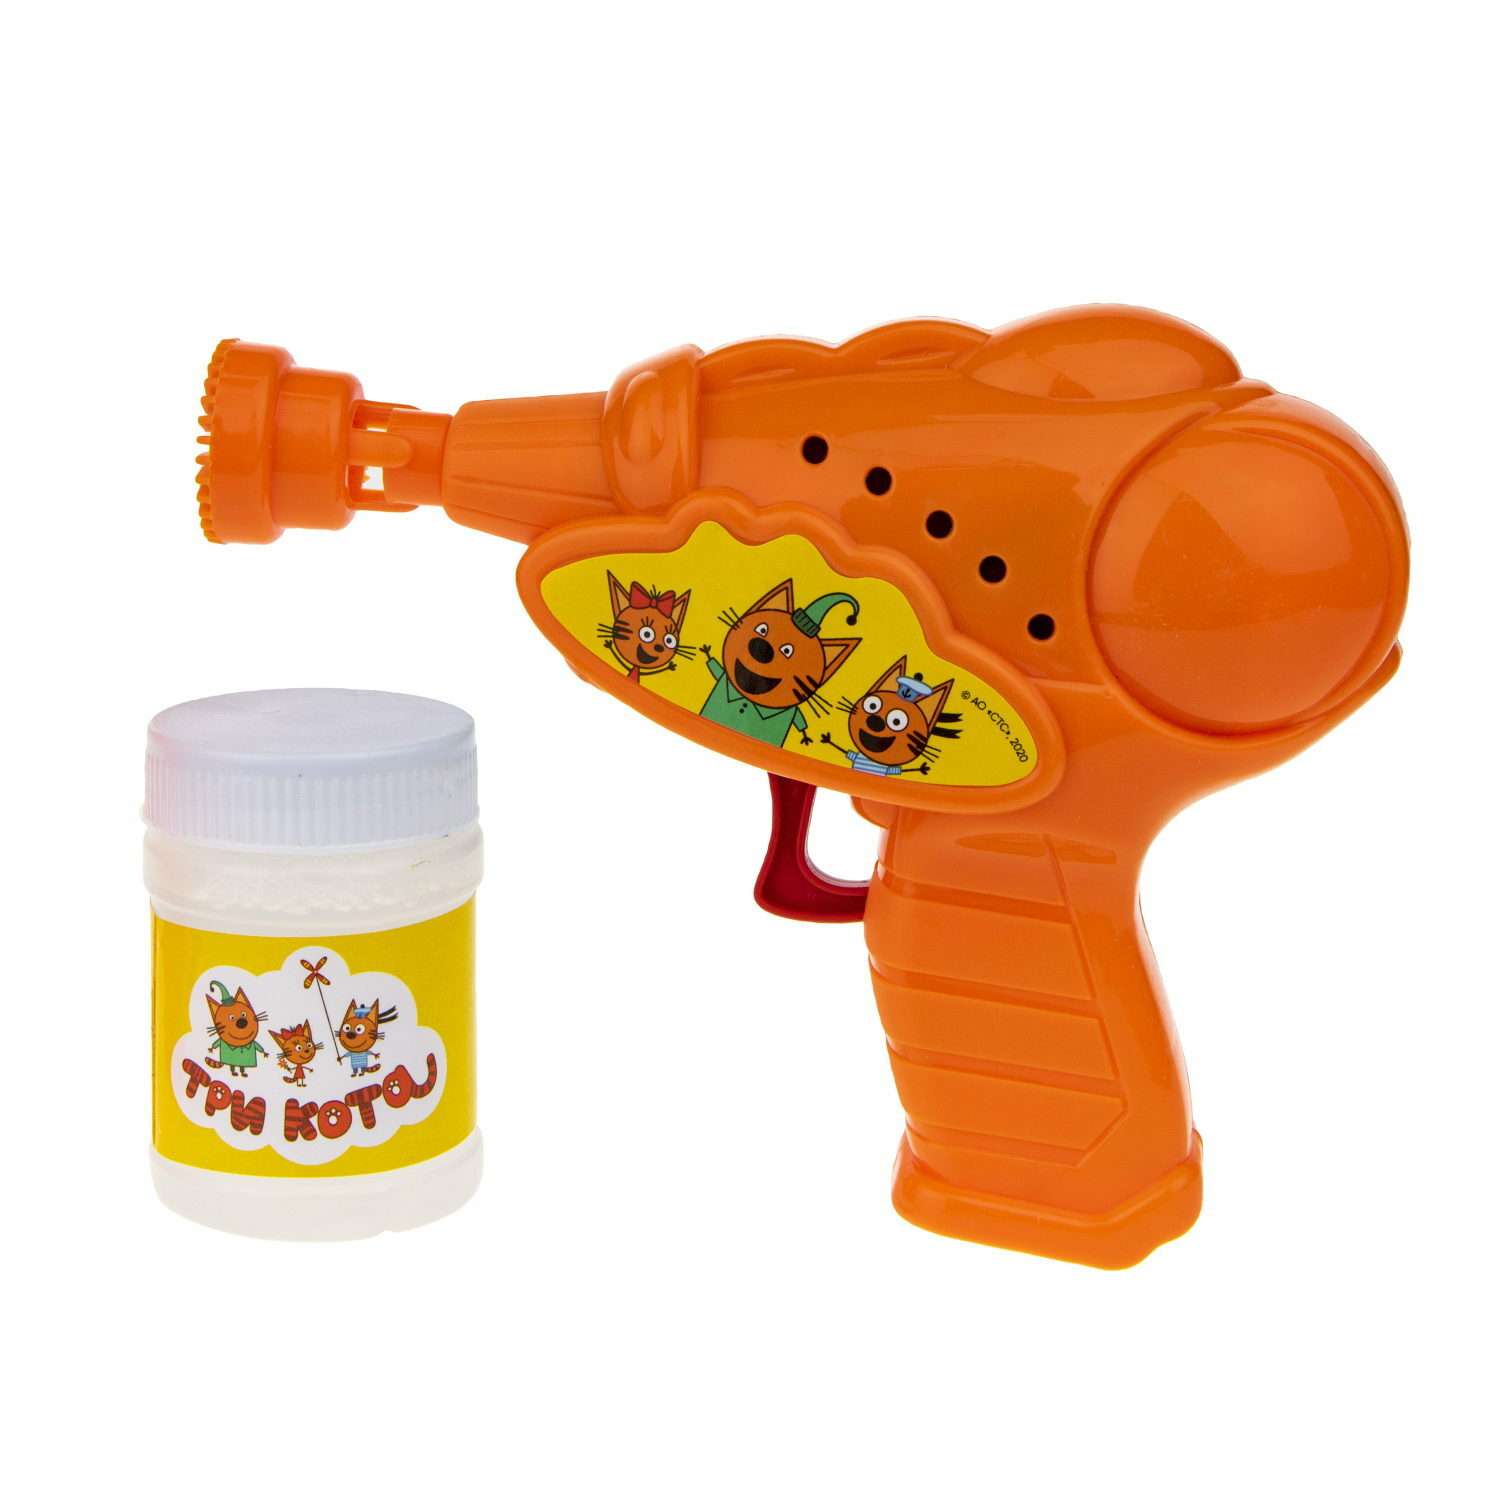 Генератор мыльных пузырей Три кота 1YOY с раствором пистолет бластер аппарат детские игрушки для улицы и дома - фото 2